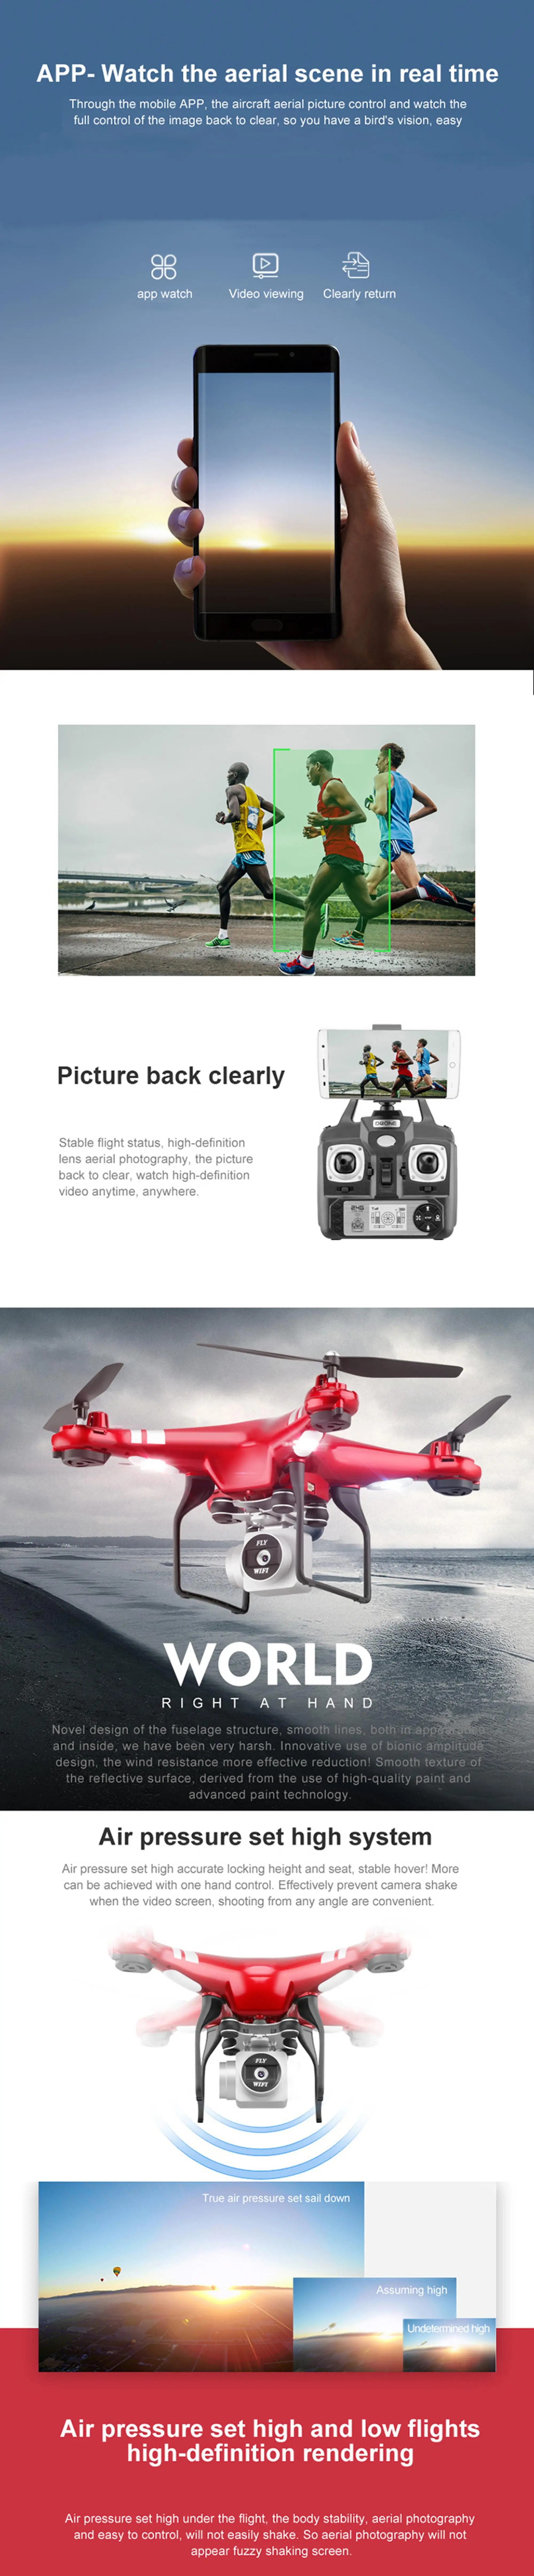 drone x52hd 1080p